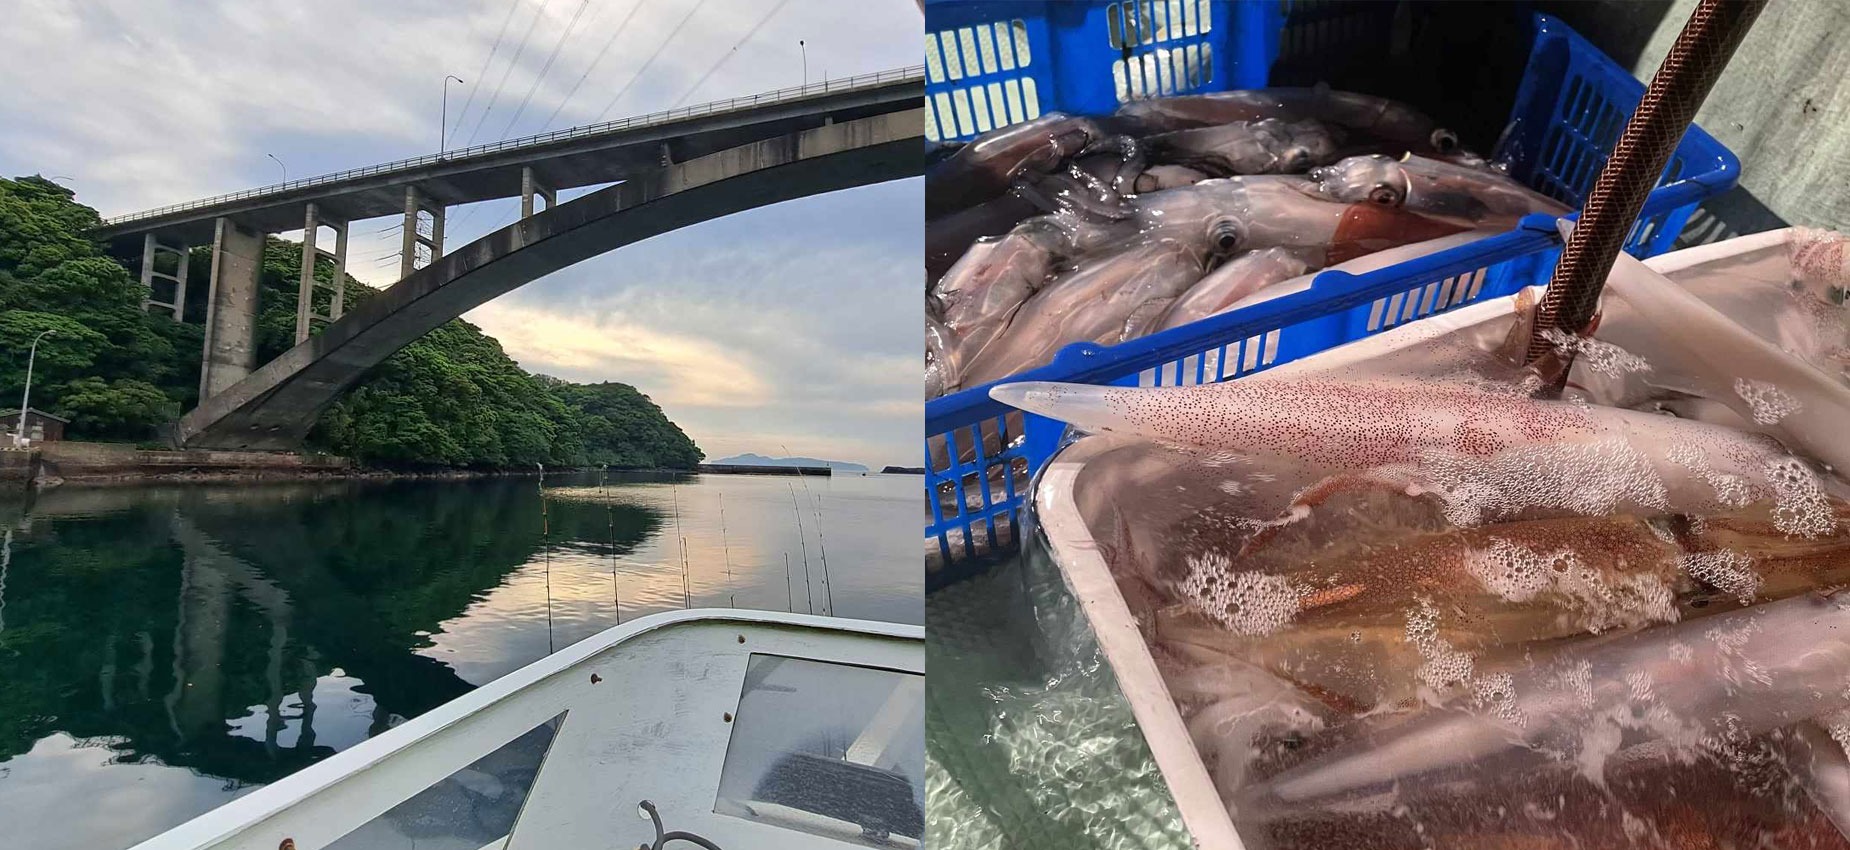 画像：左側にイカ釣り漁船上から見た橋と夕焼けの風景写真、右側に釣り上げたたくさんのイカがプラスチックのかごに入れられている様子の写真を組み合わせたもの